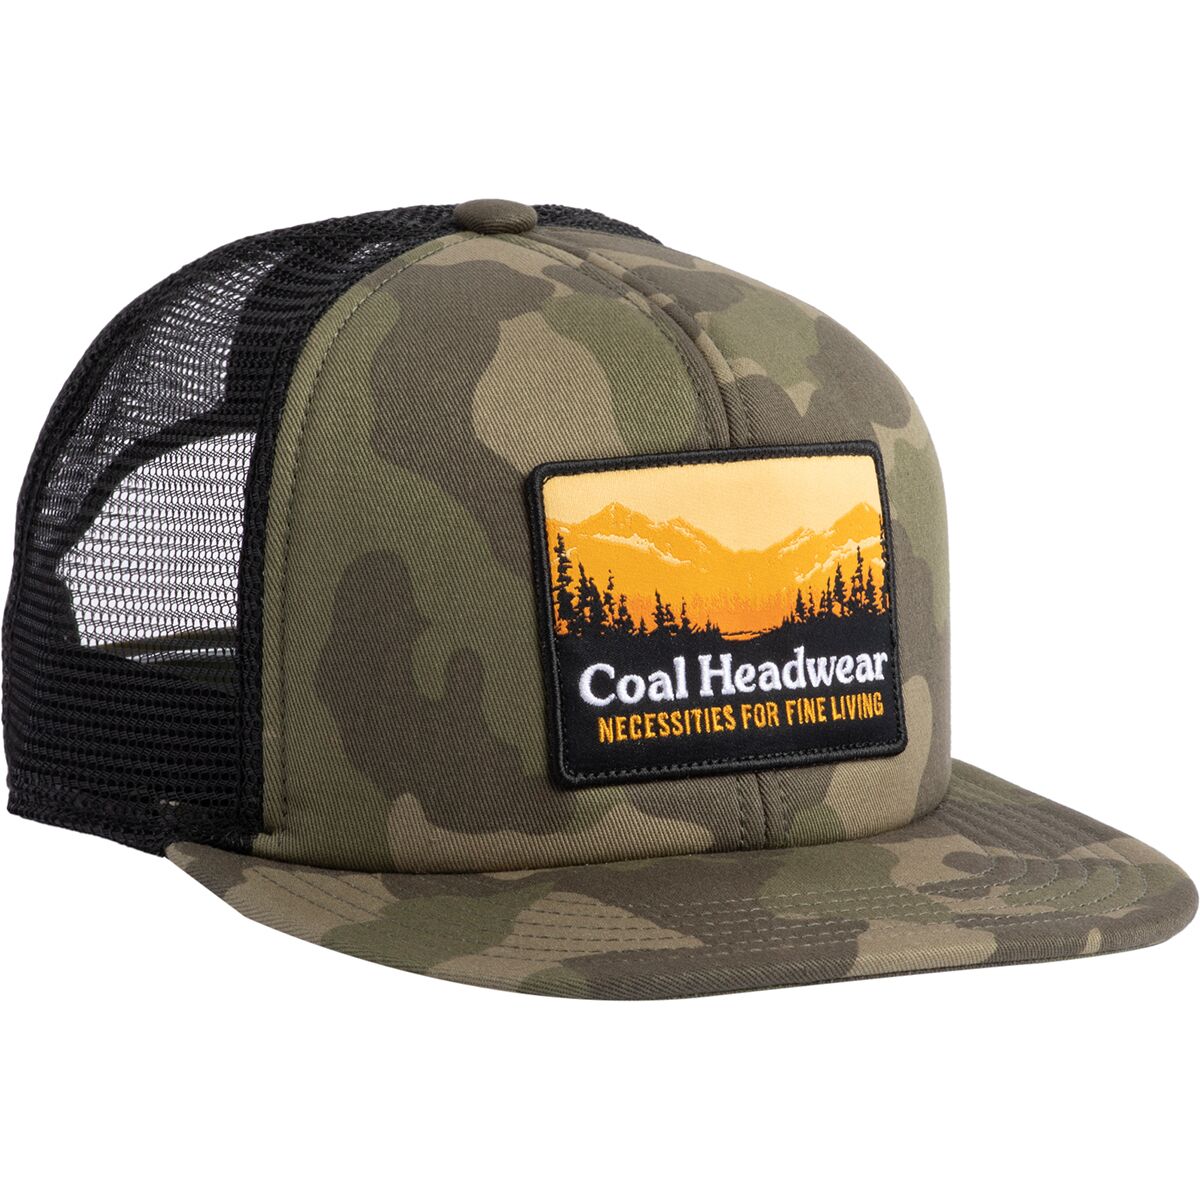 Coal Headwear Hauler Trucker Hat